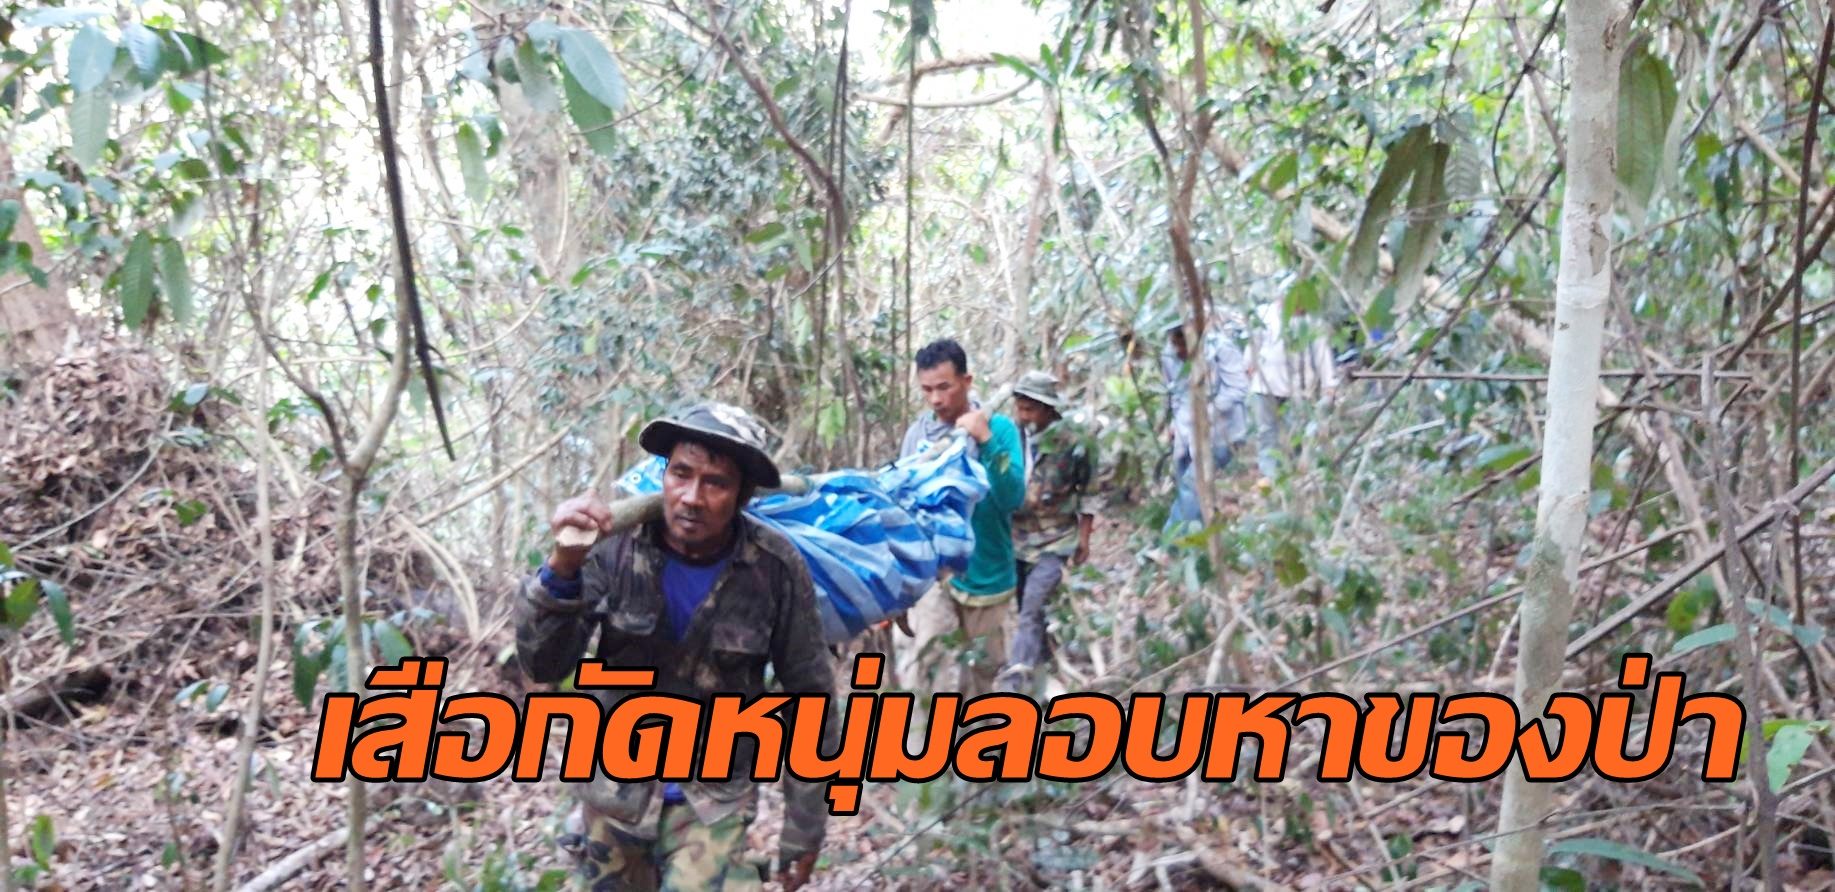 หนุ่มโคราชลอบหาของป่าอุทยานทับลาน ถูกเสือกัดดับ 1 ราย เพื่อนหนีรอดหวุดหวิด